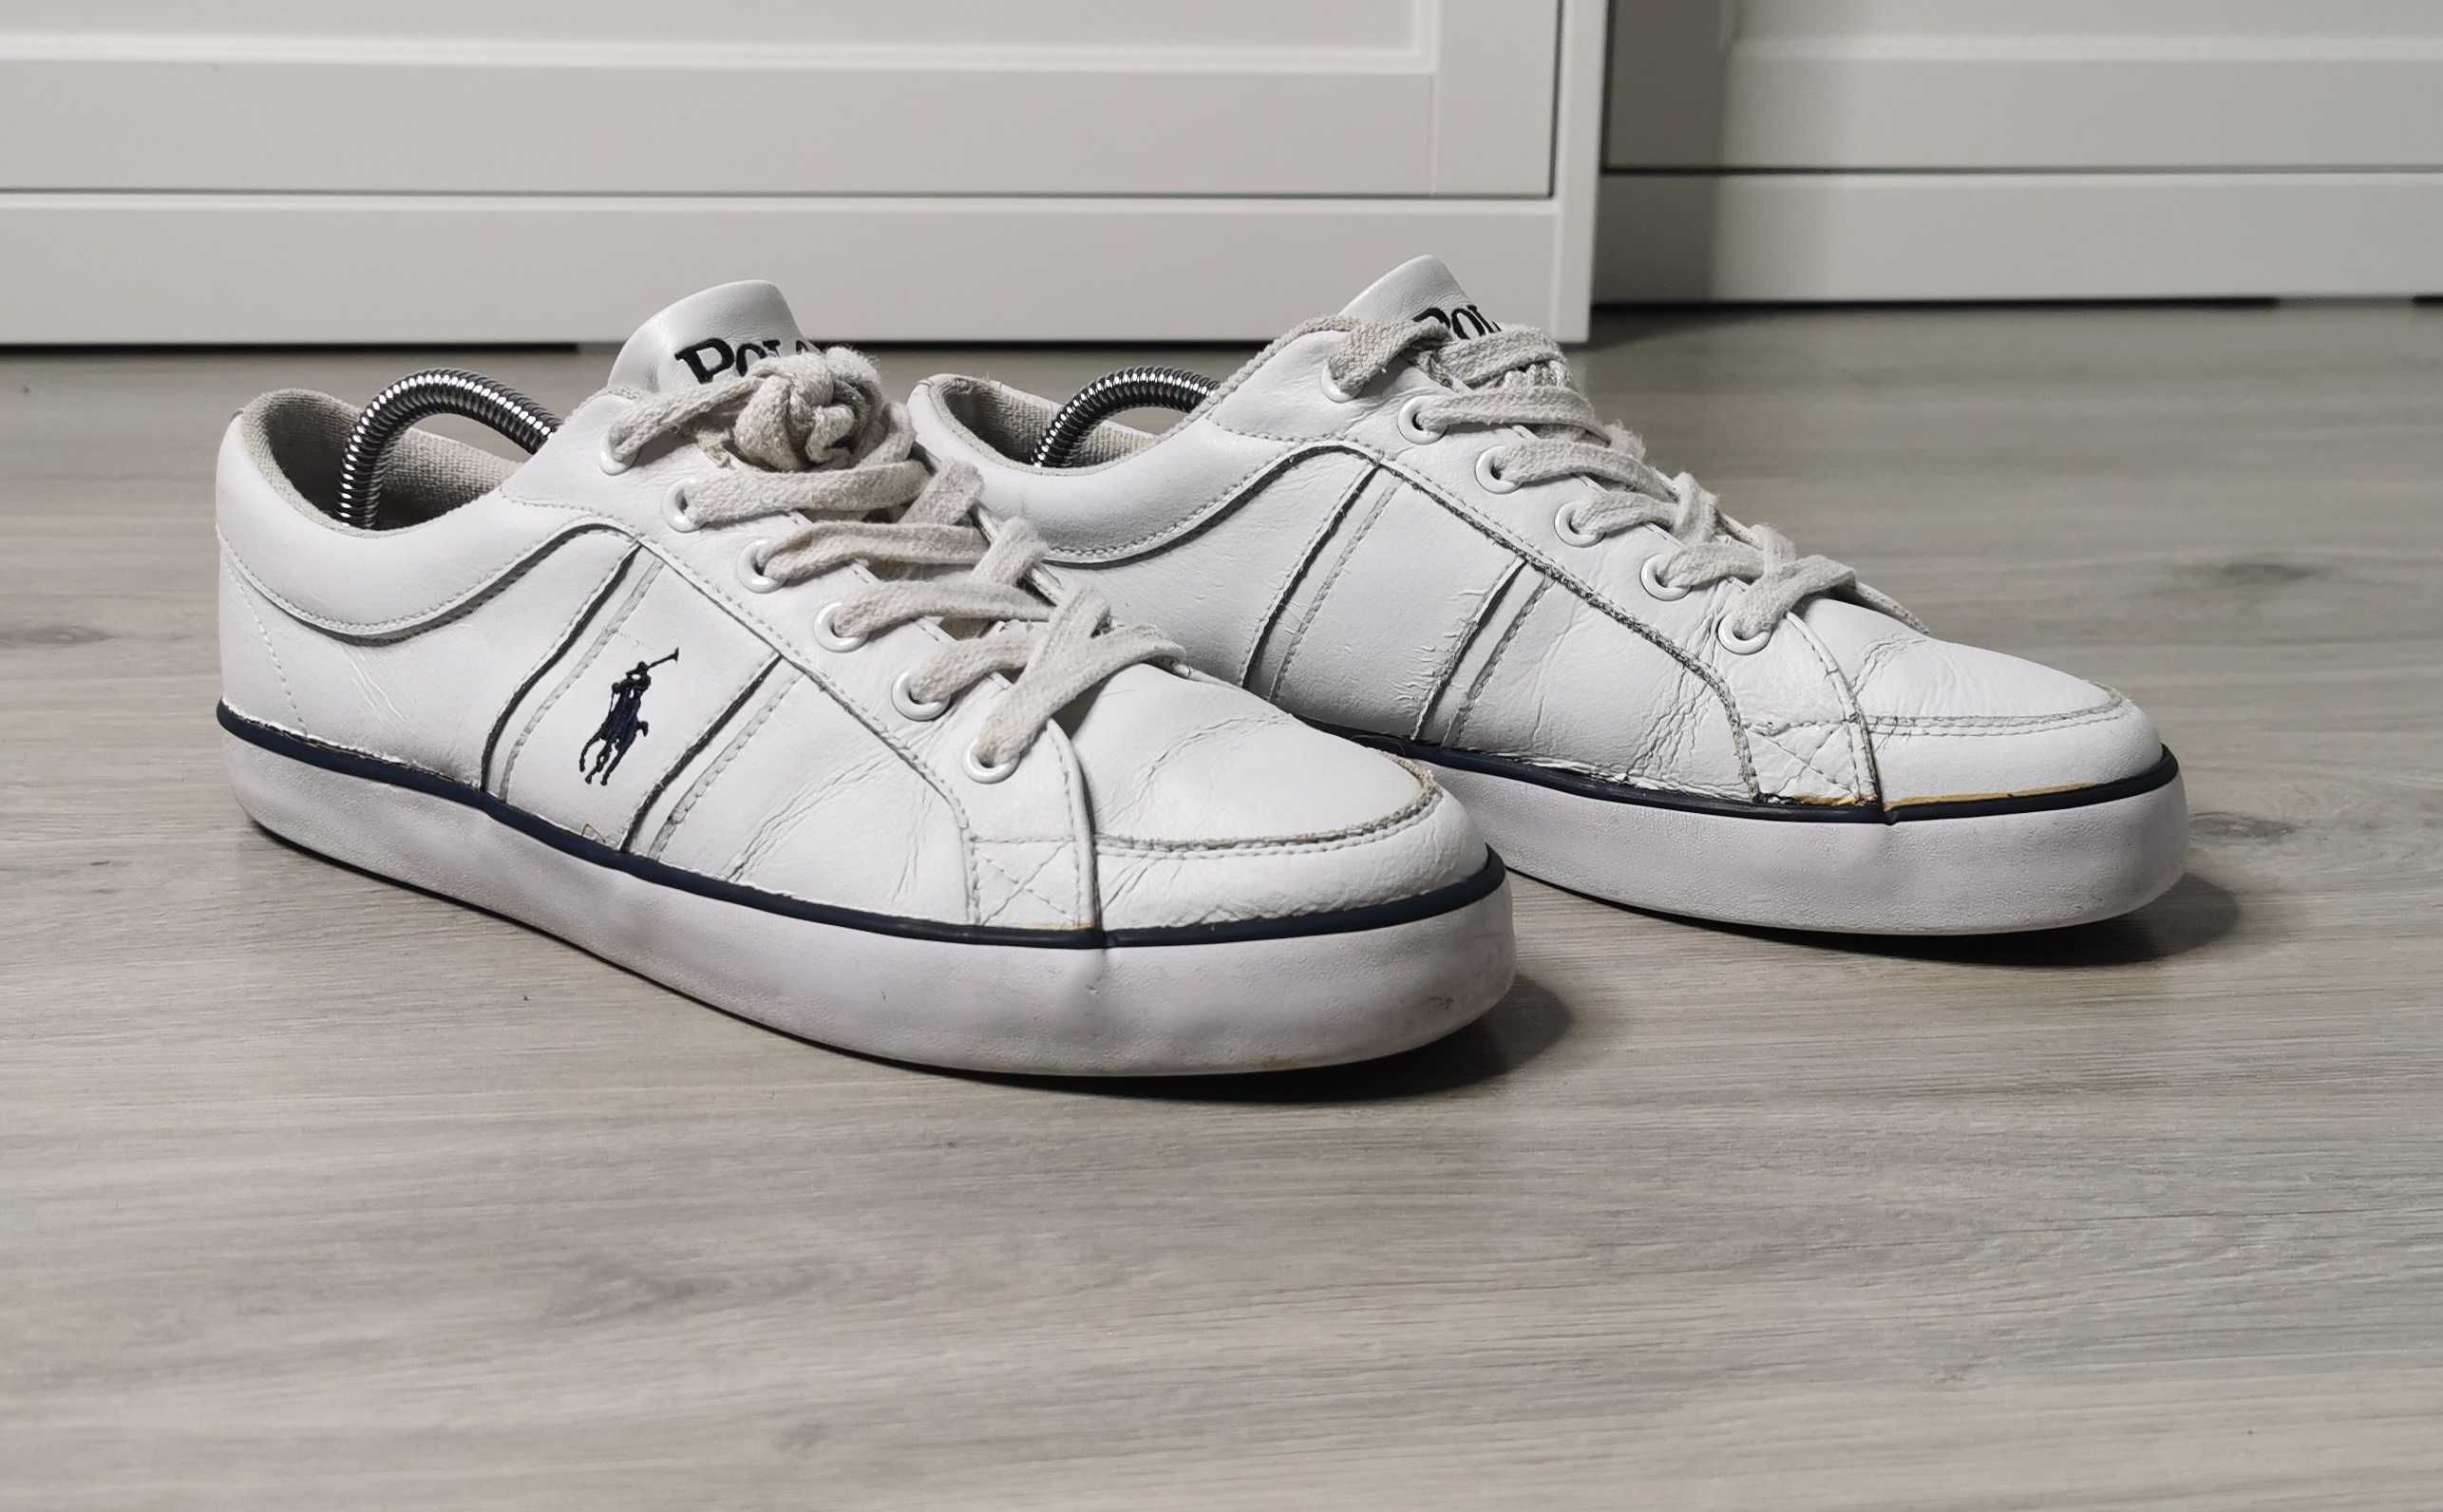 Buty Polo Ralph Lauren półbuty tenisówki rozmiar 44 wkładka 28.5cm